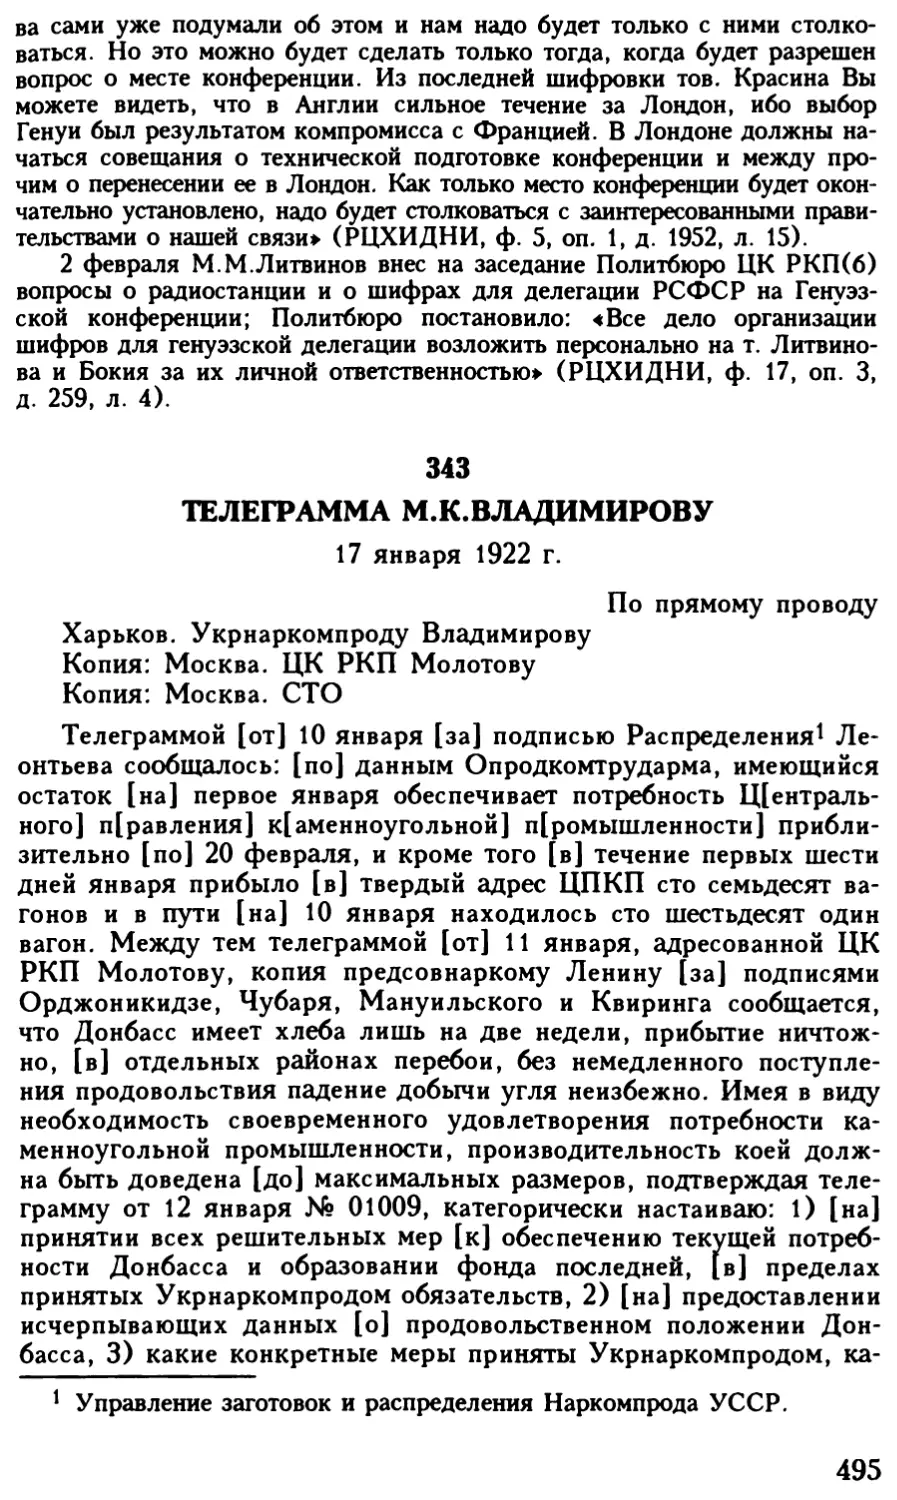 343. Телеграмма М.К.Владимирову. 17 января 1922 г